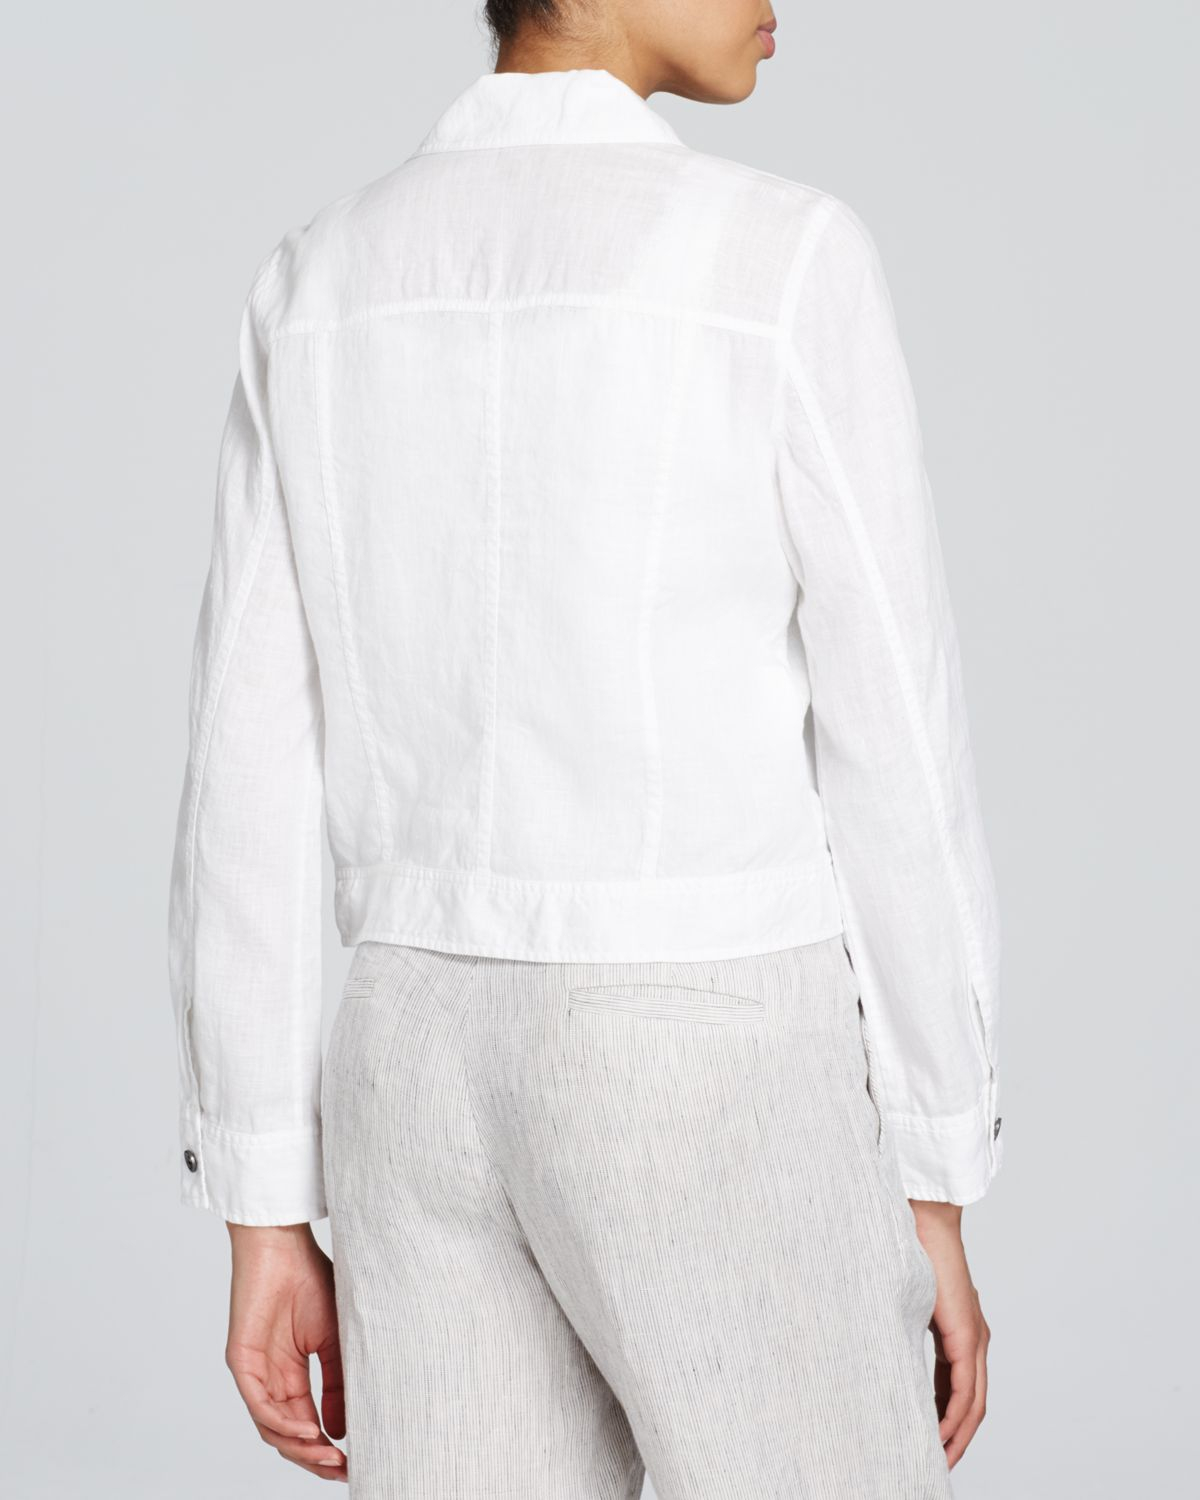 Eileen fisher Linen Jean Jacket in White | Lyst